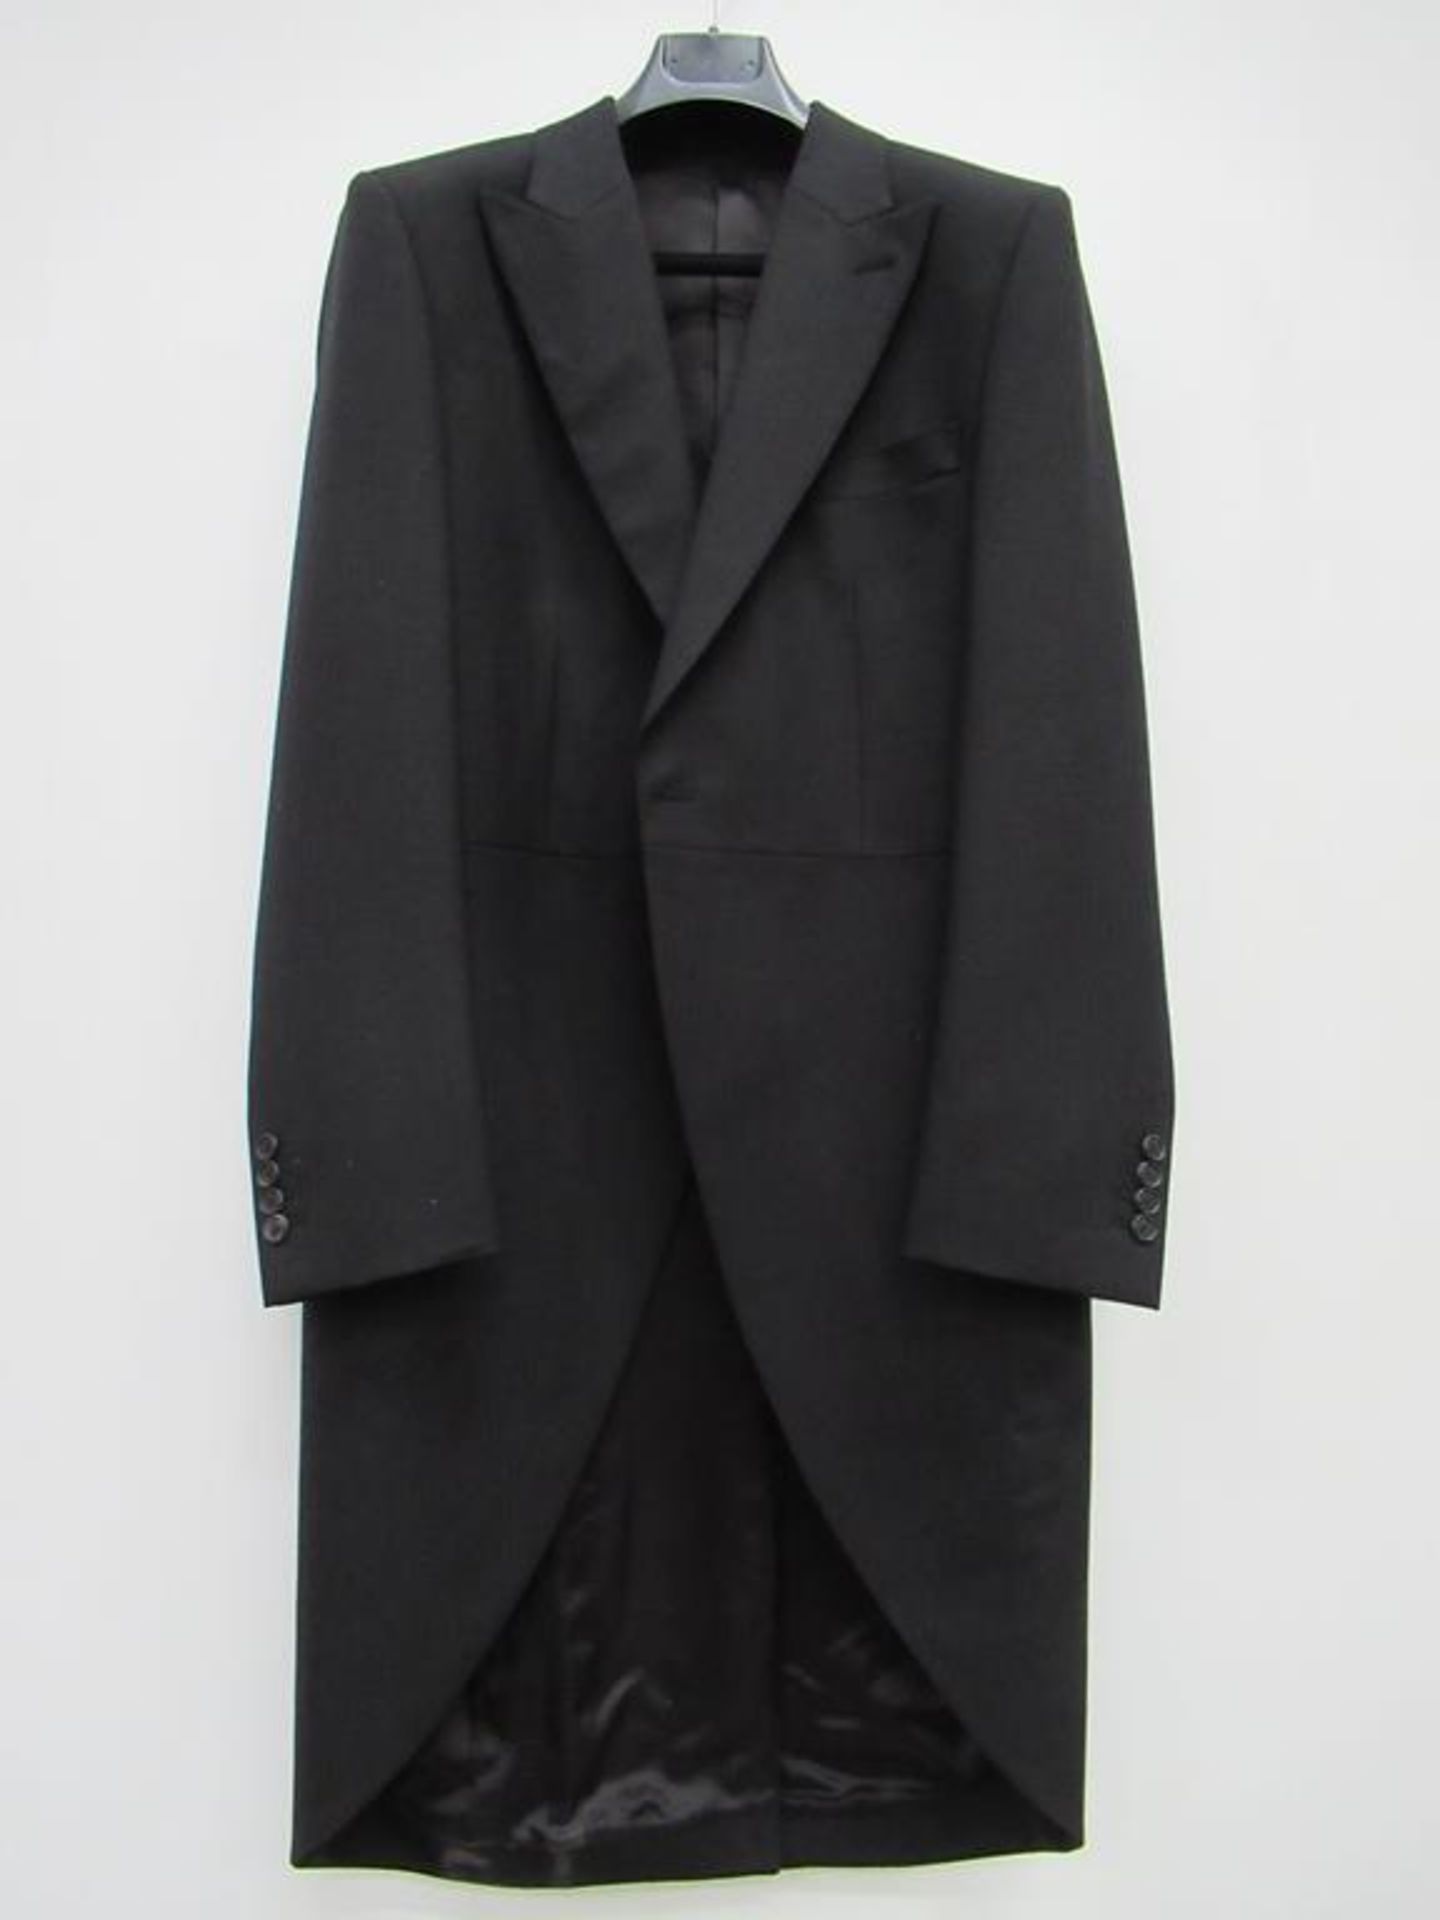 Morning coat and waistcoat